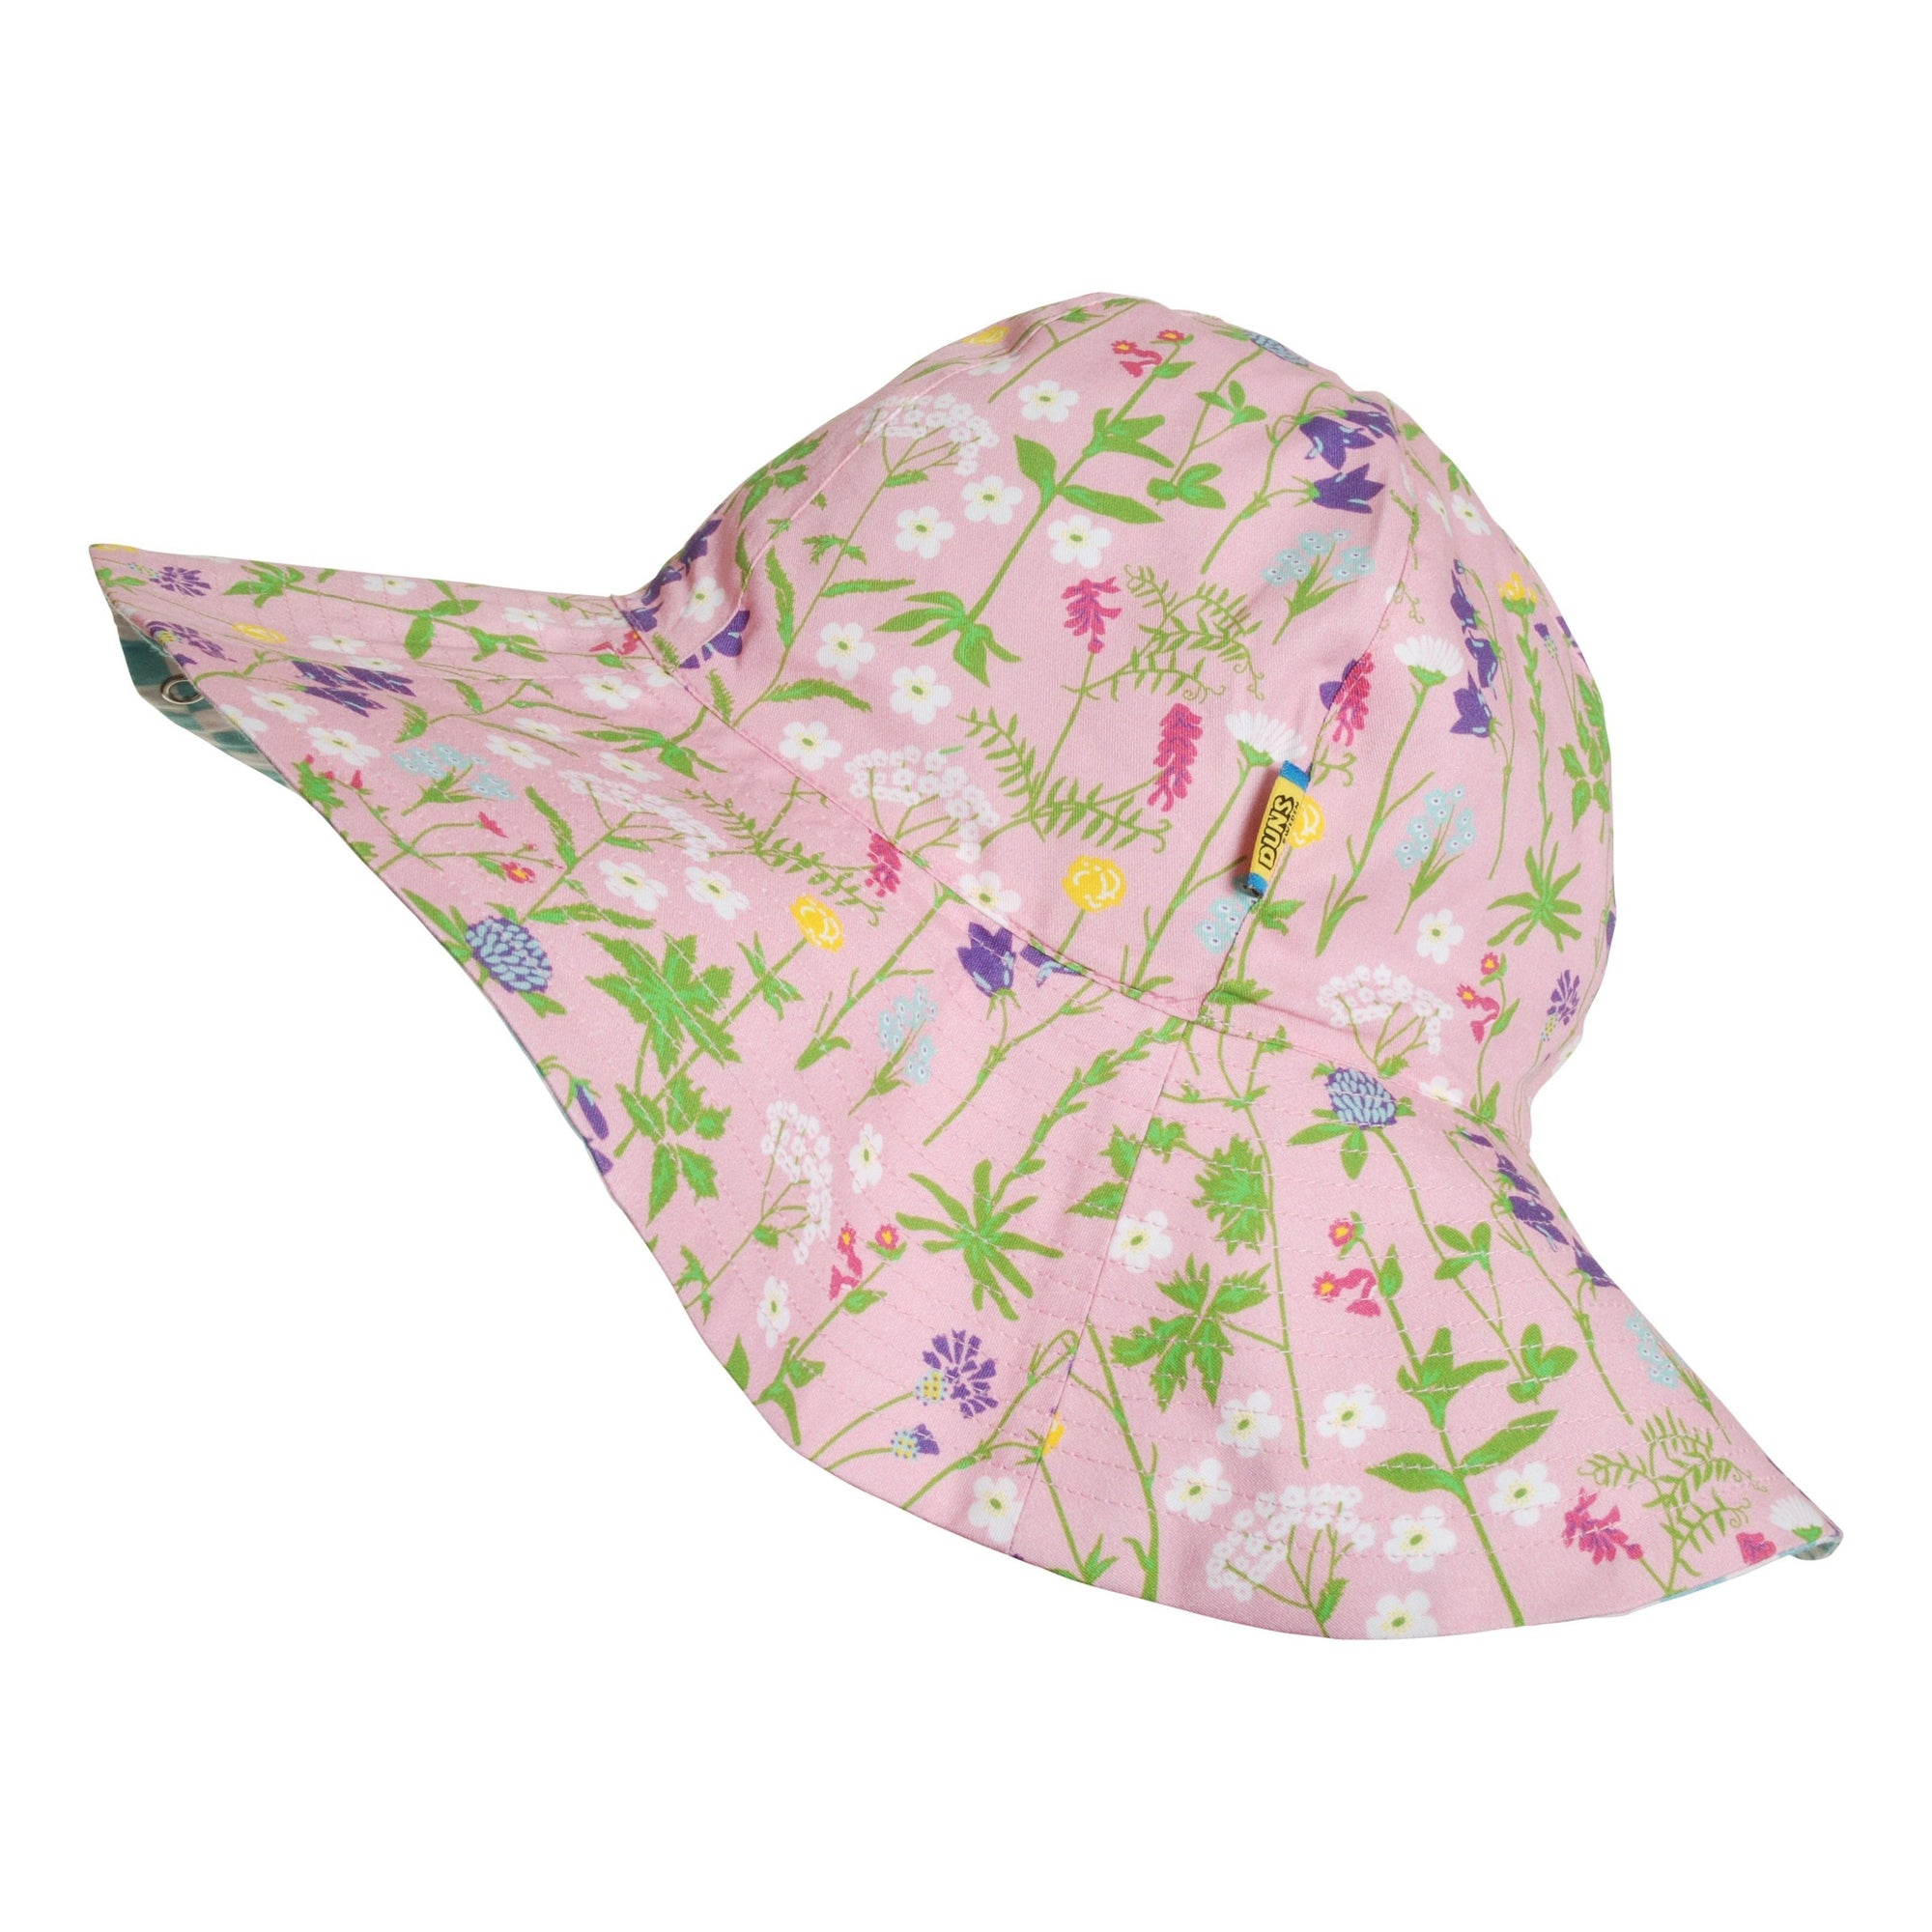 Wildflowers - Pink Woven Sunhat - 2 Left Size S & XL-Duns Sweden-Modern Rascals